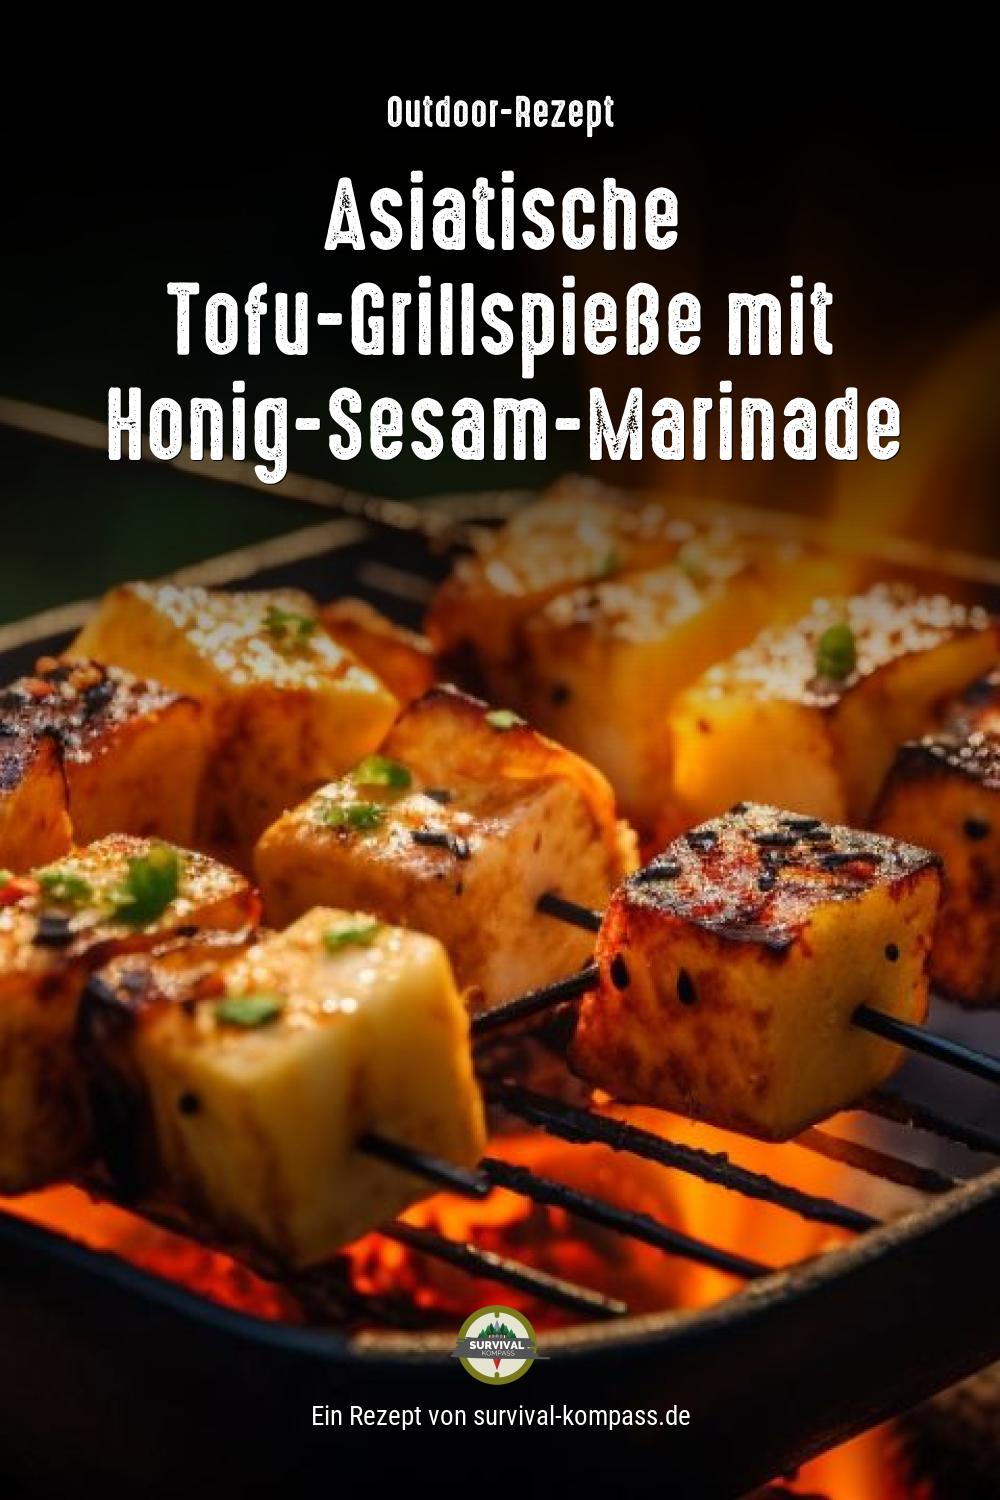 Asiatische Tofu-Grillspieße mit Honig-Sesam-Marinade